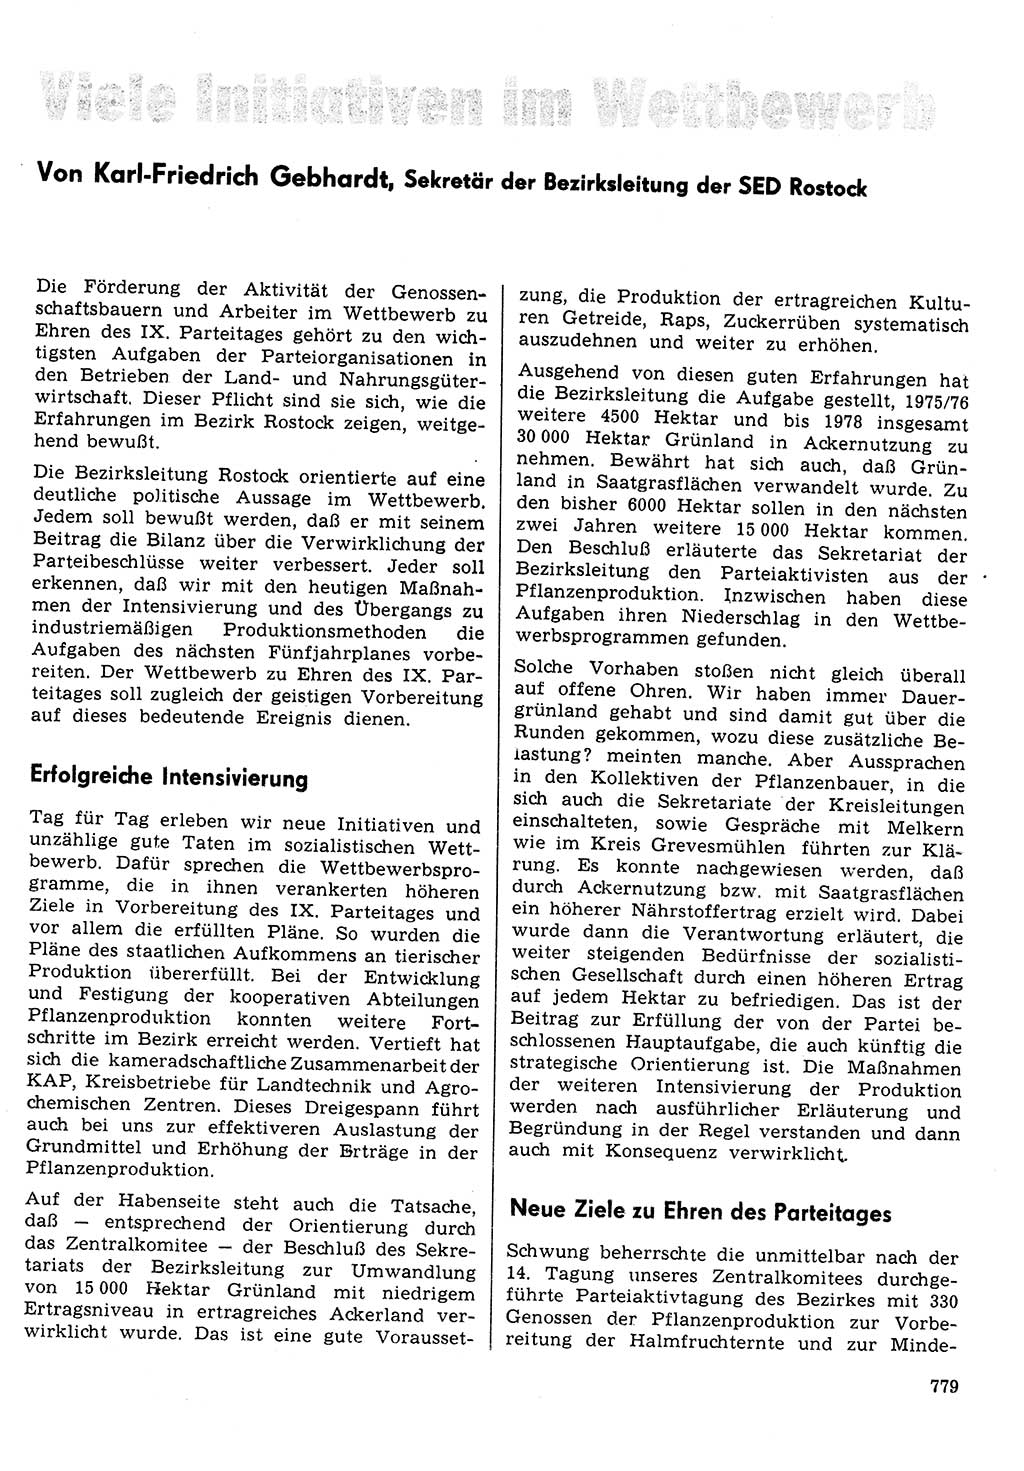 Neuer Weg (NW), Organ des Zentralkomitees (ZK) der SED (Sozialistische Einheitspartei Deutschlands) für Fragen des Parteilebens, 30. Jahrgang [Deutsche Demokratische Republik (DDR)] 1975, Seite 779 (NW ZK SED DDR 1975, S. 779)